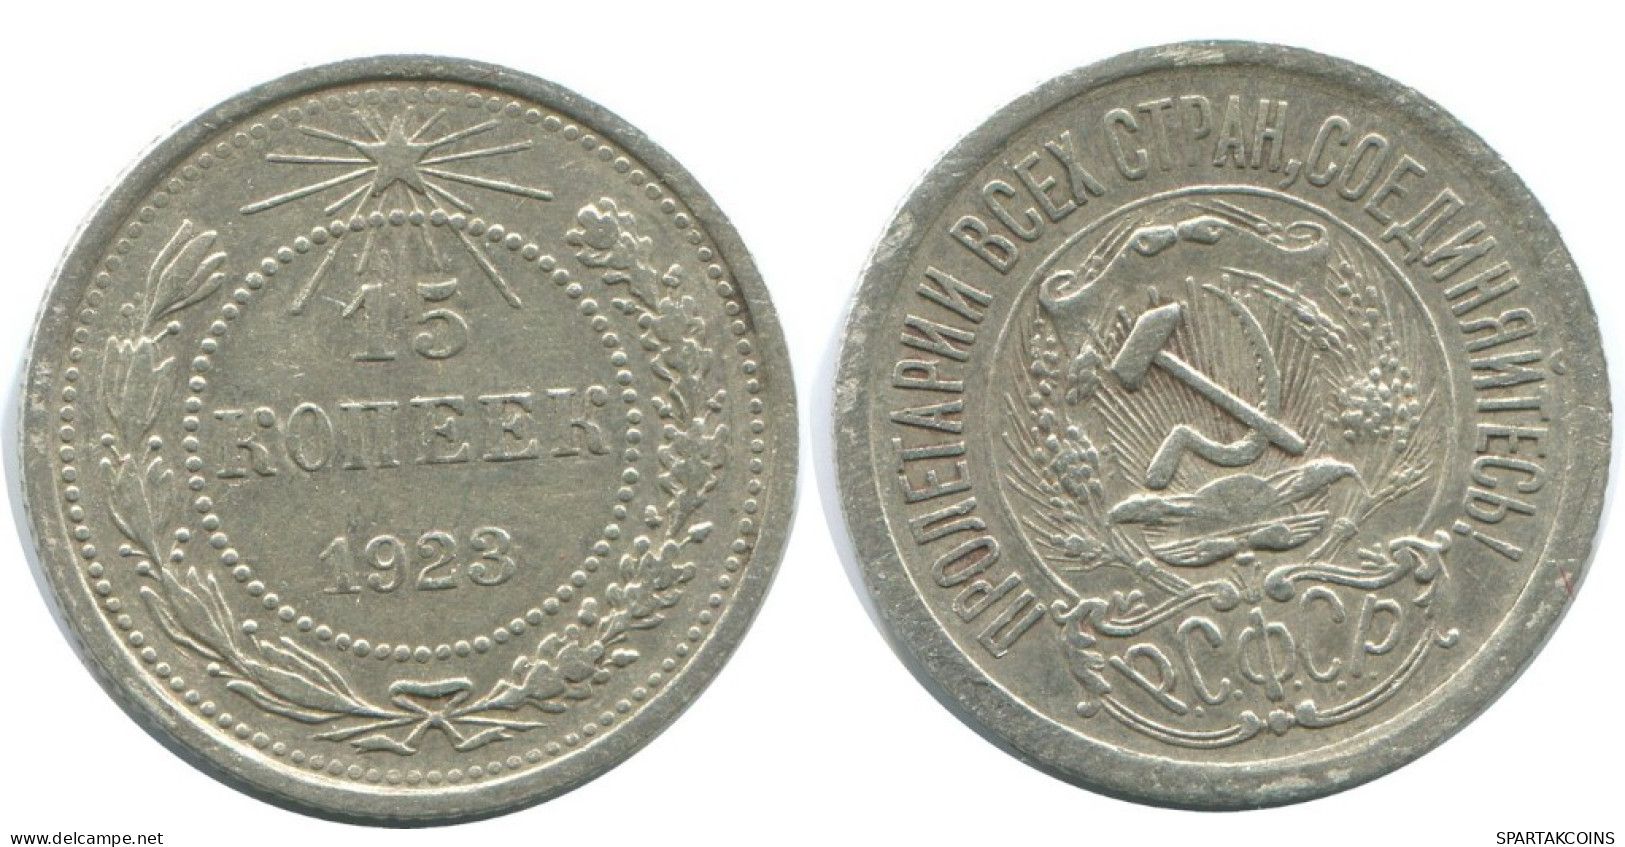 15 KOPEKS 1923 RUSSIA RSFSR SILVER Coin HIGH GRADE #AF138.4.U.A - Russland